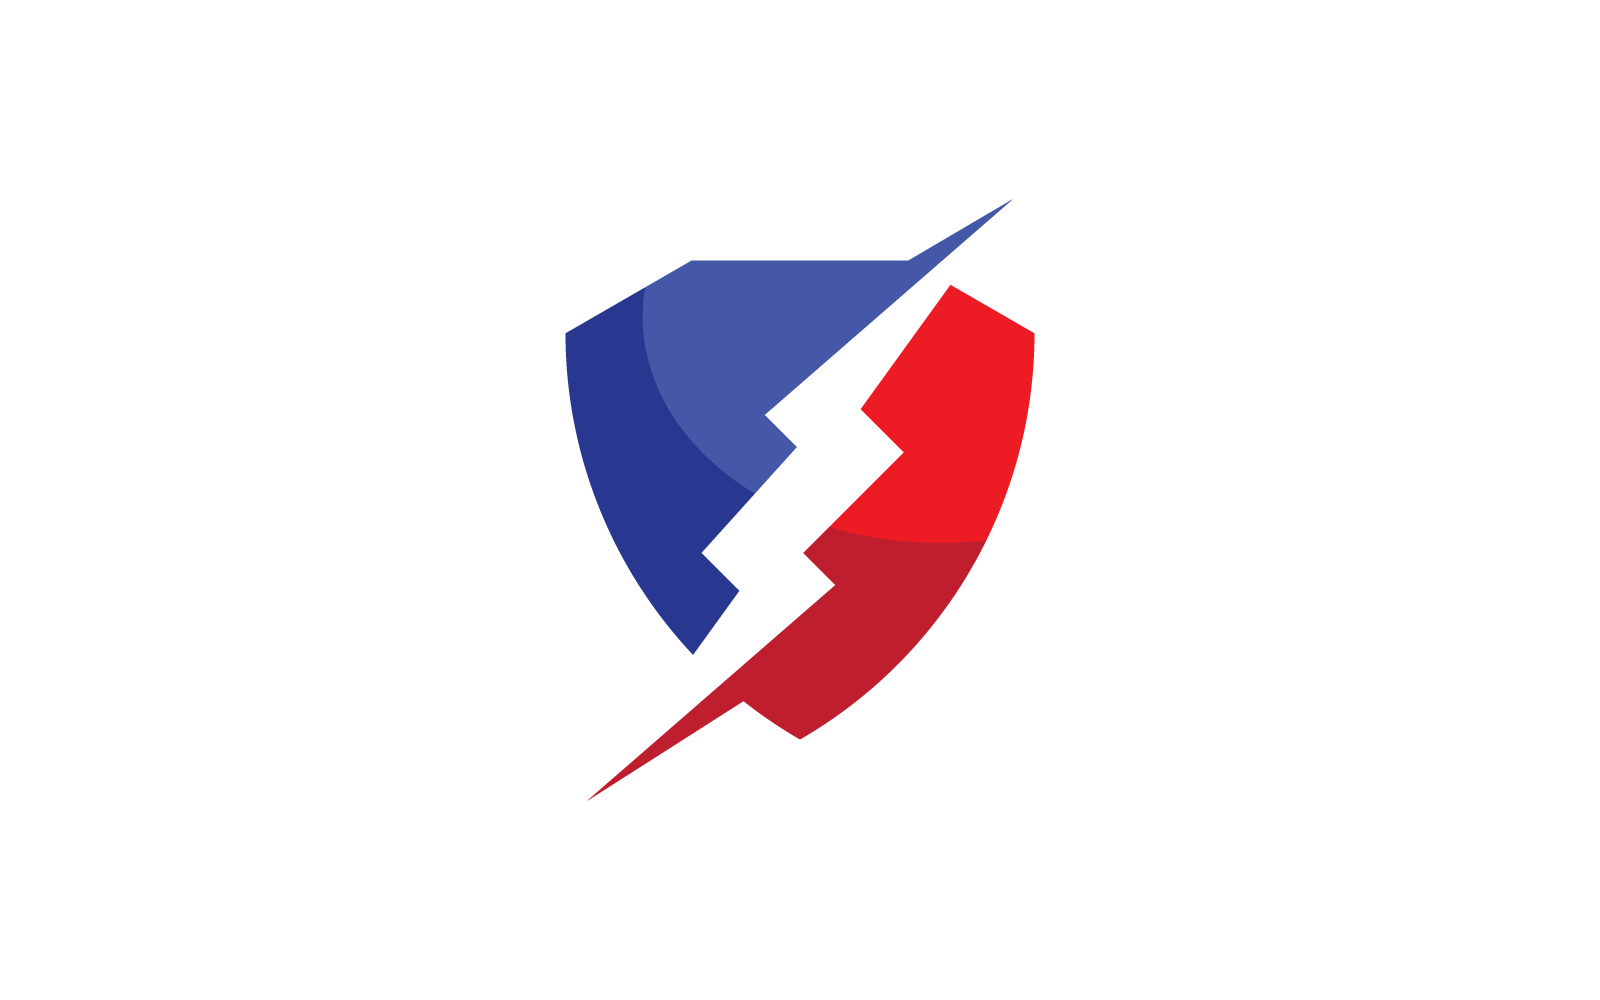 Power lightning power energy vector logo icon flat design